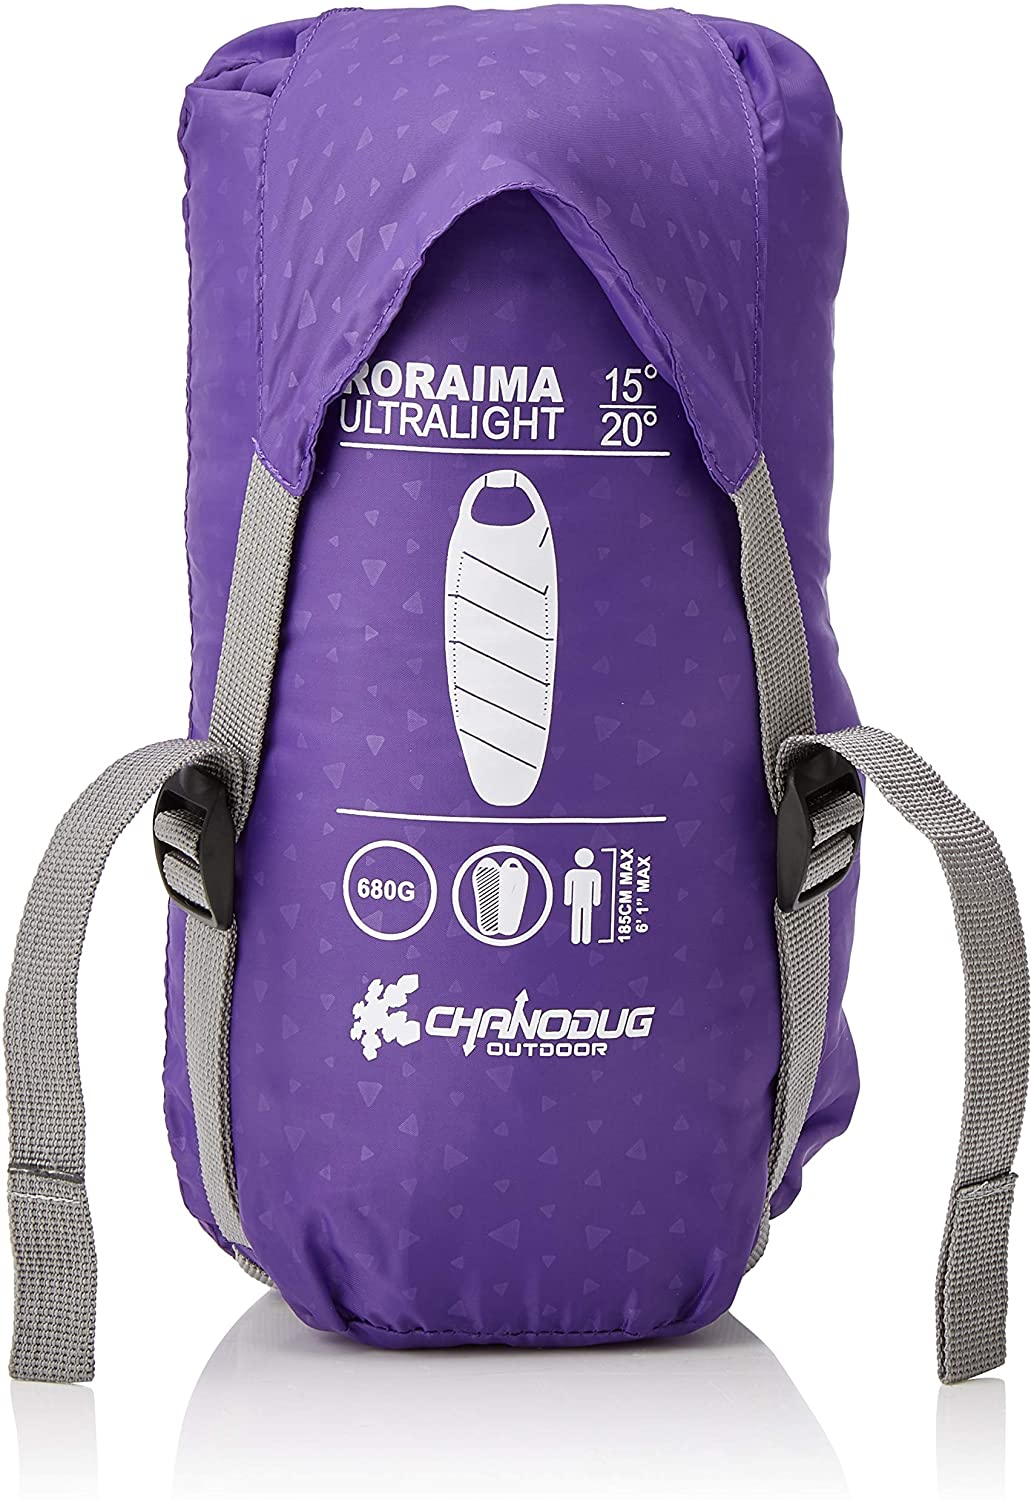 Kounga Unisexs Sleeping Bag Roraima 0-5 Black/Grey Large